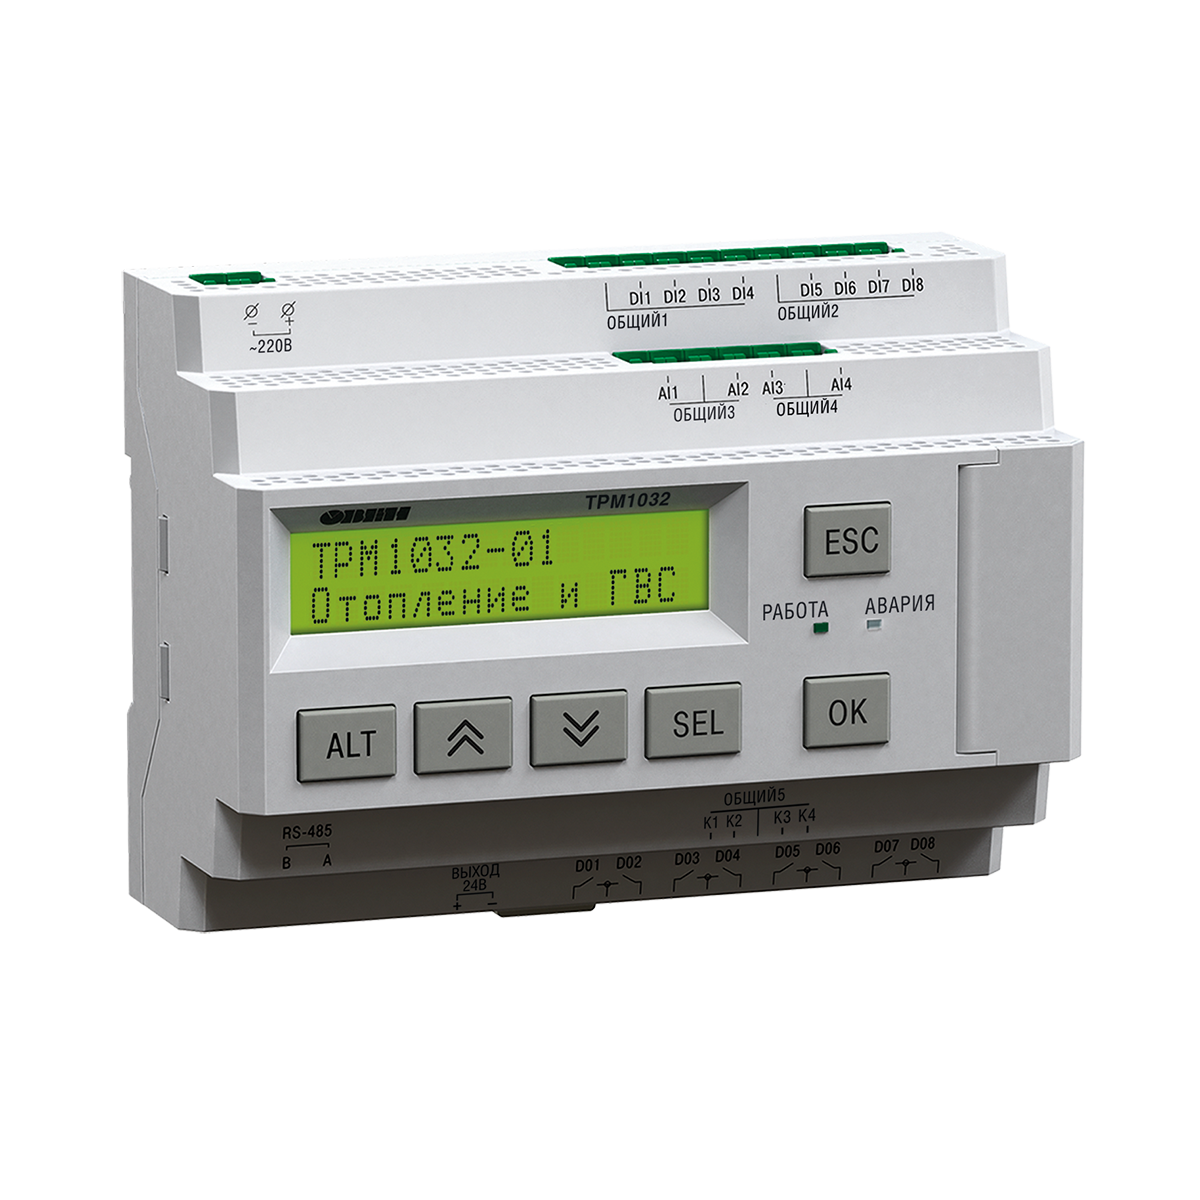 ТРМ1032М-01.30.У – устройство с готовой логикой для автоматизации контуров отопления и ГВС в ИТП/ЦТП.